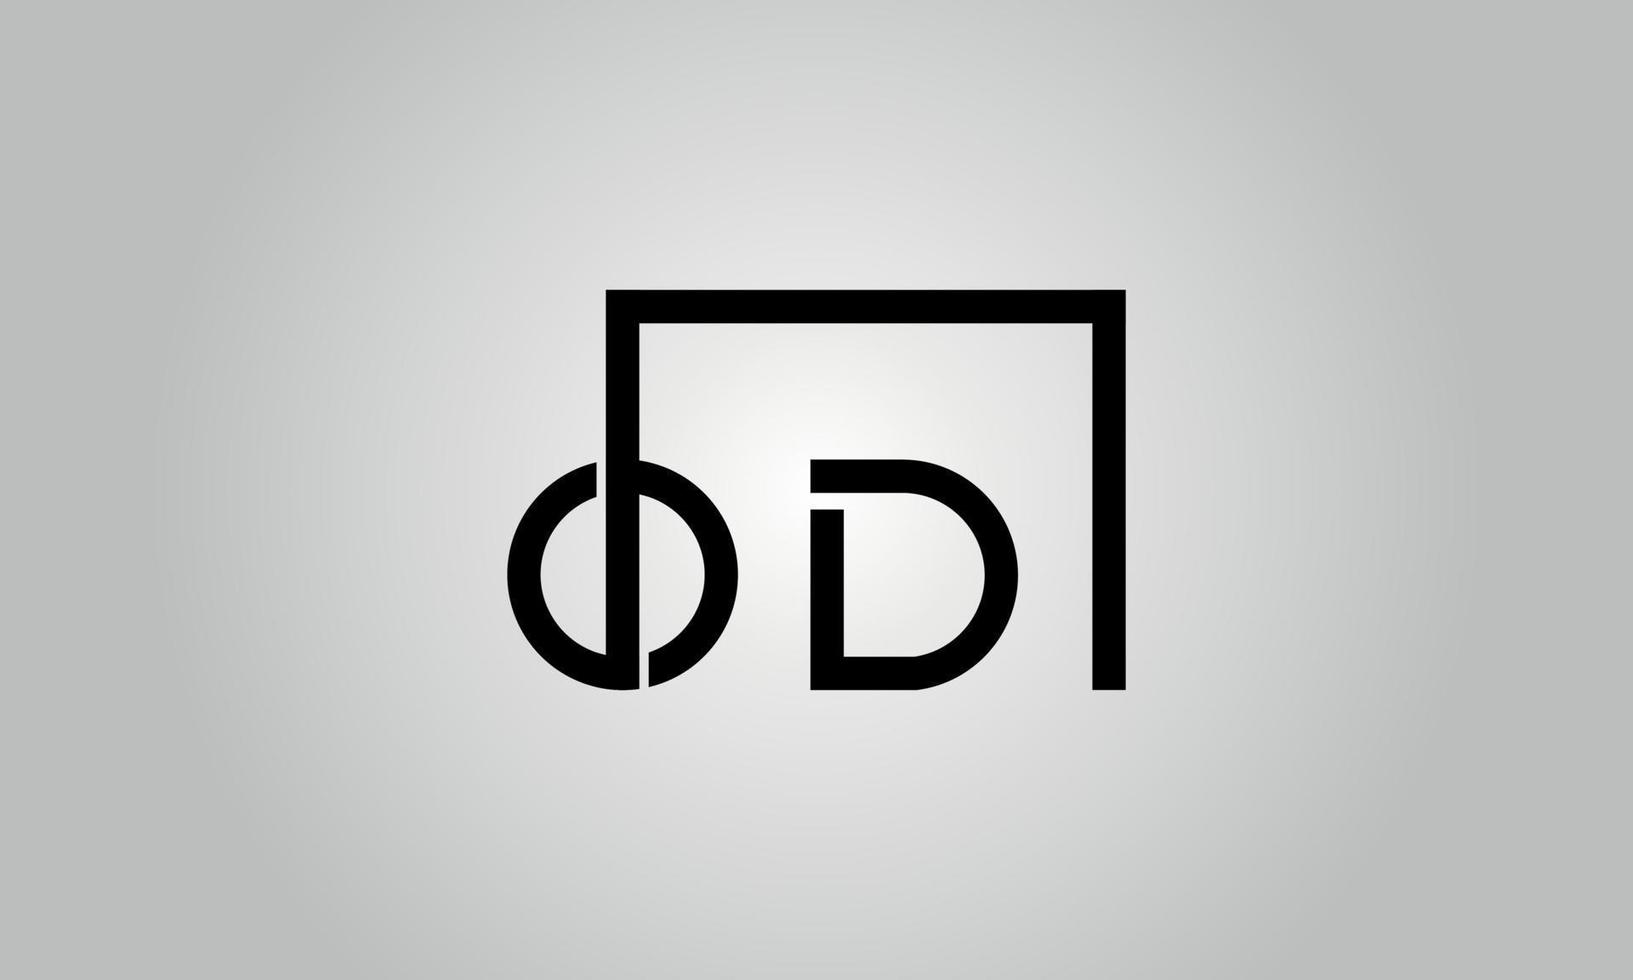 création de logo lettre od. logo od avec forme carrée dans le modèle vectoriel gratuit de couleurs noires.